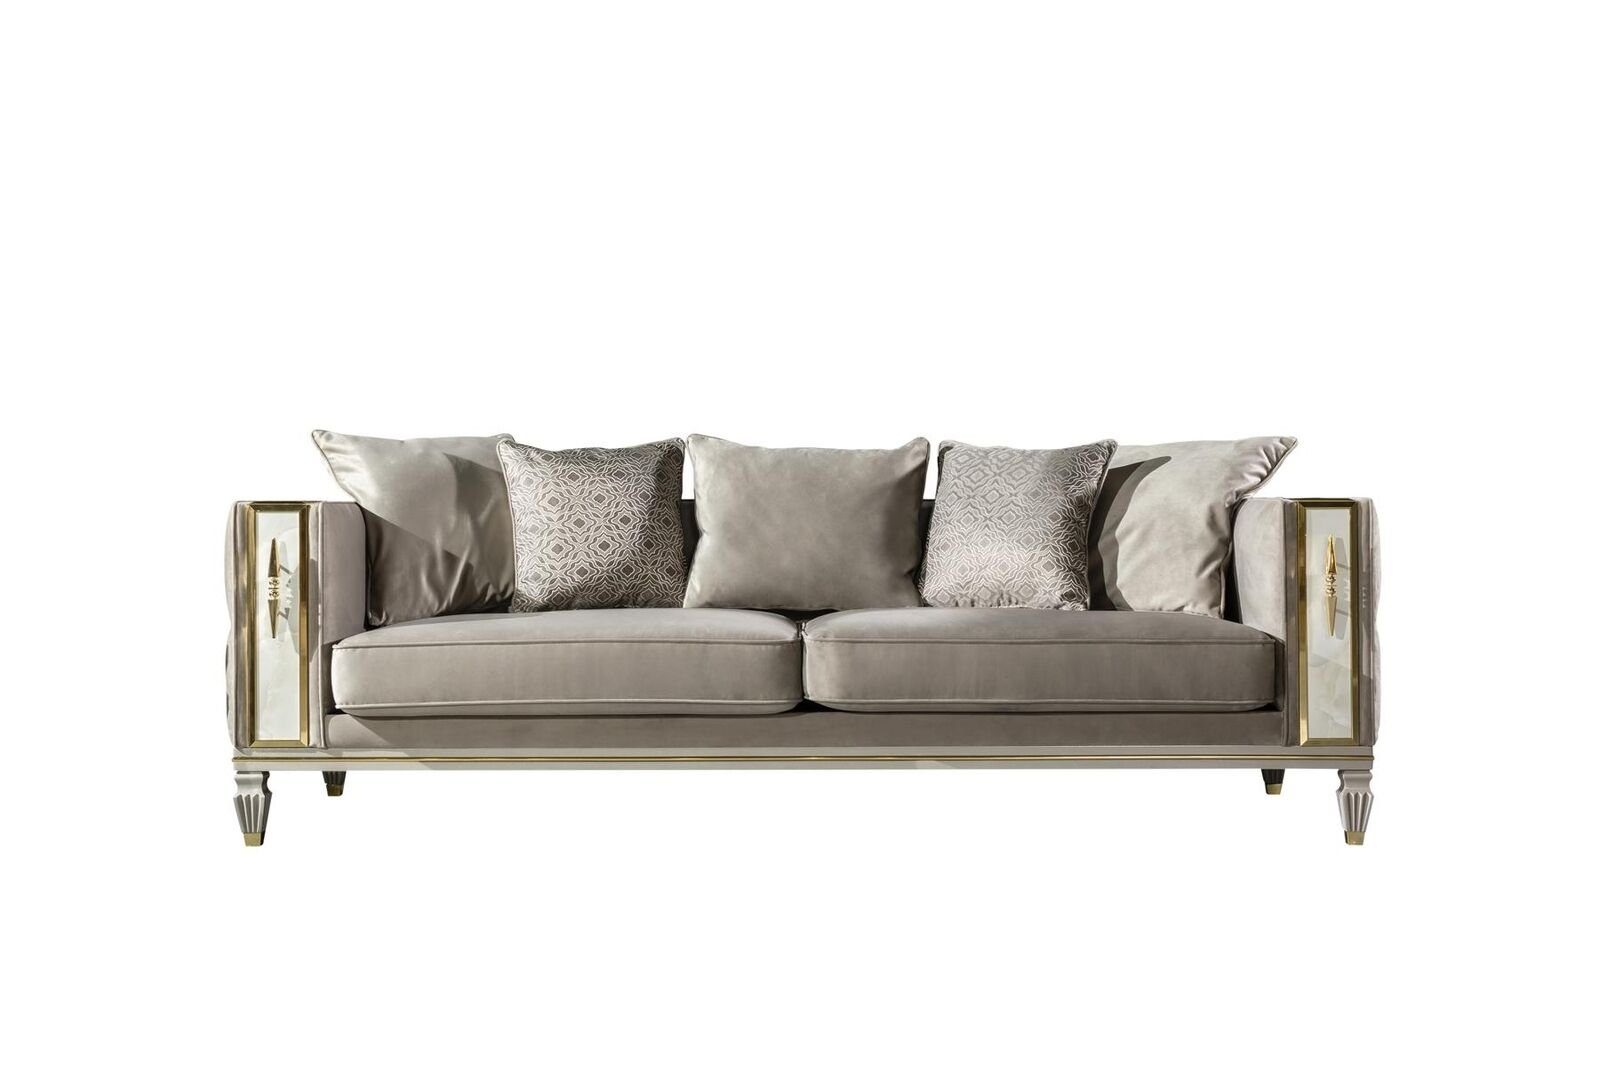 Sofa JVmoebel Chesterfield big Sofa Einrichtung Design xxl Sofas Polster Möbel Couch